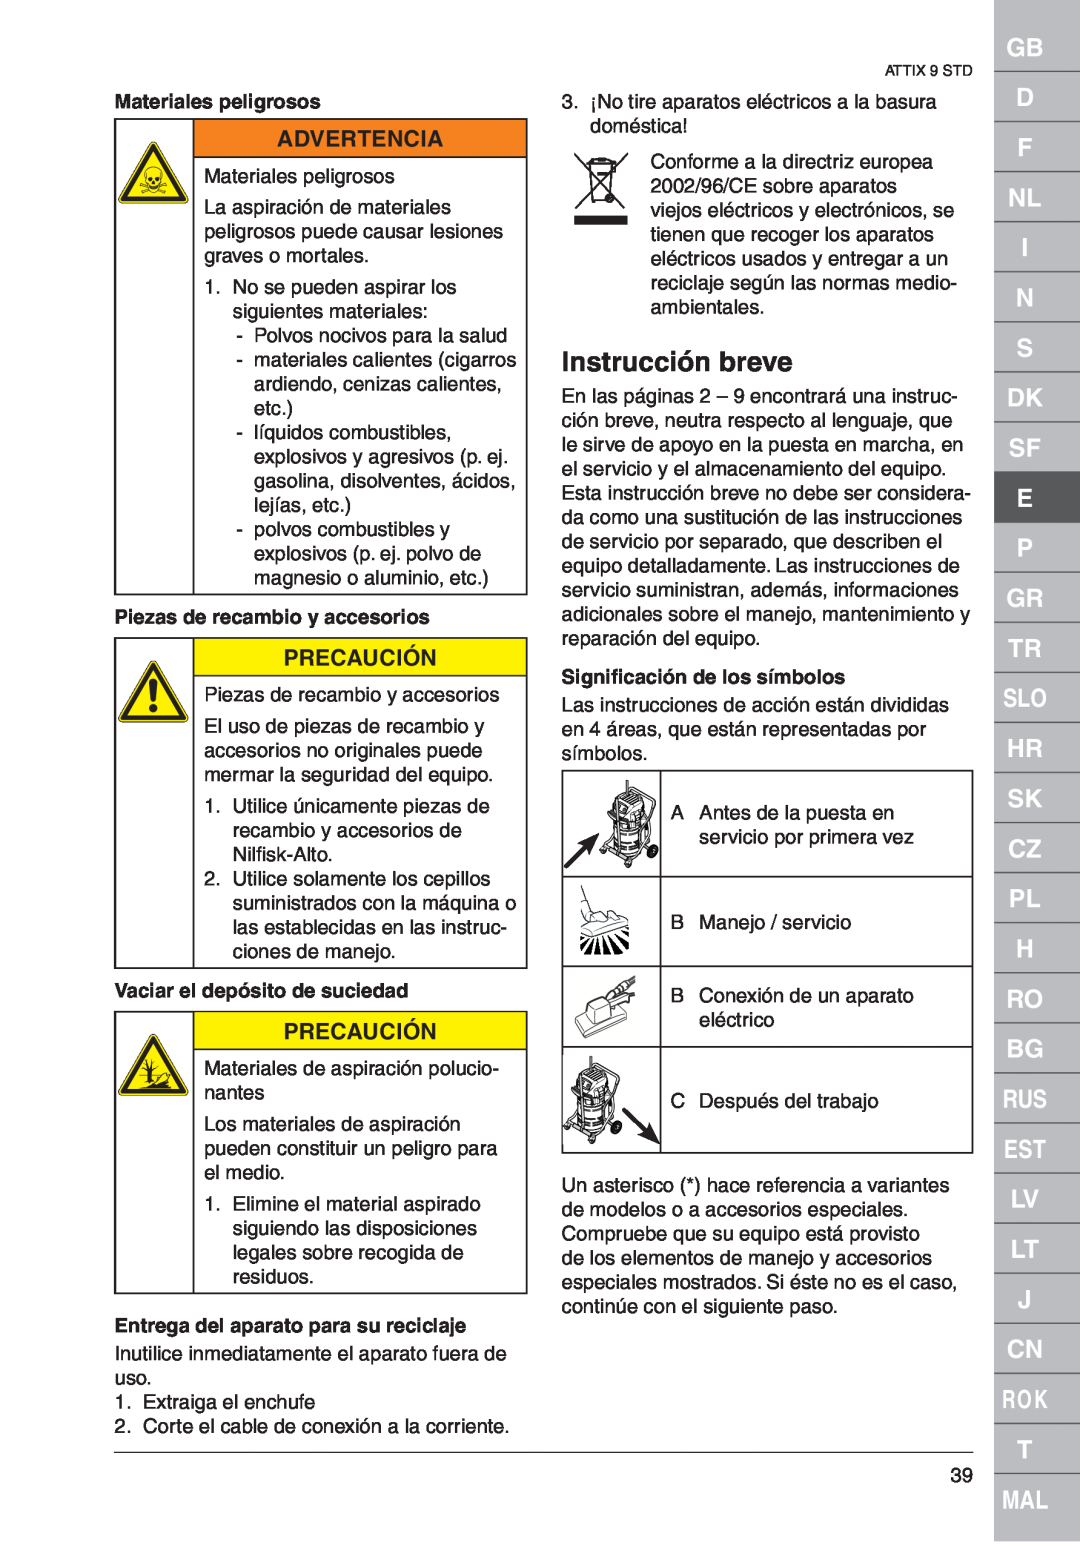 Nilfisk-ALTO ATTIX 961-01 Instrucción breve, Materiales peligrosos, Piezas de recambio y accesorios, Advertencia 